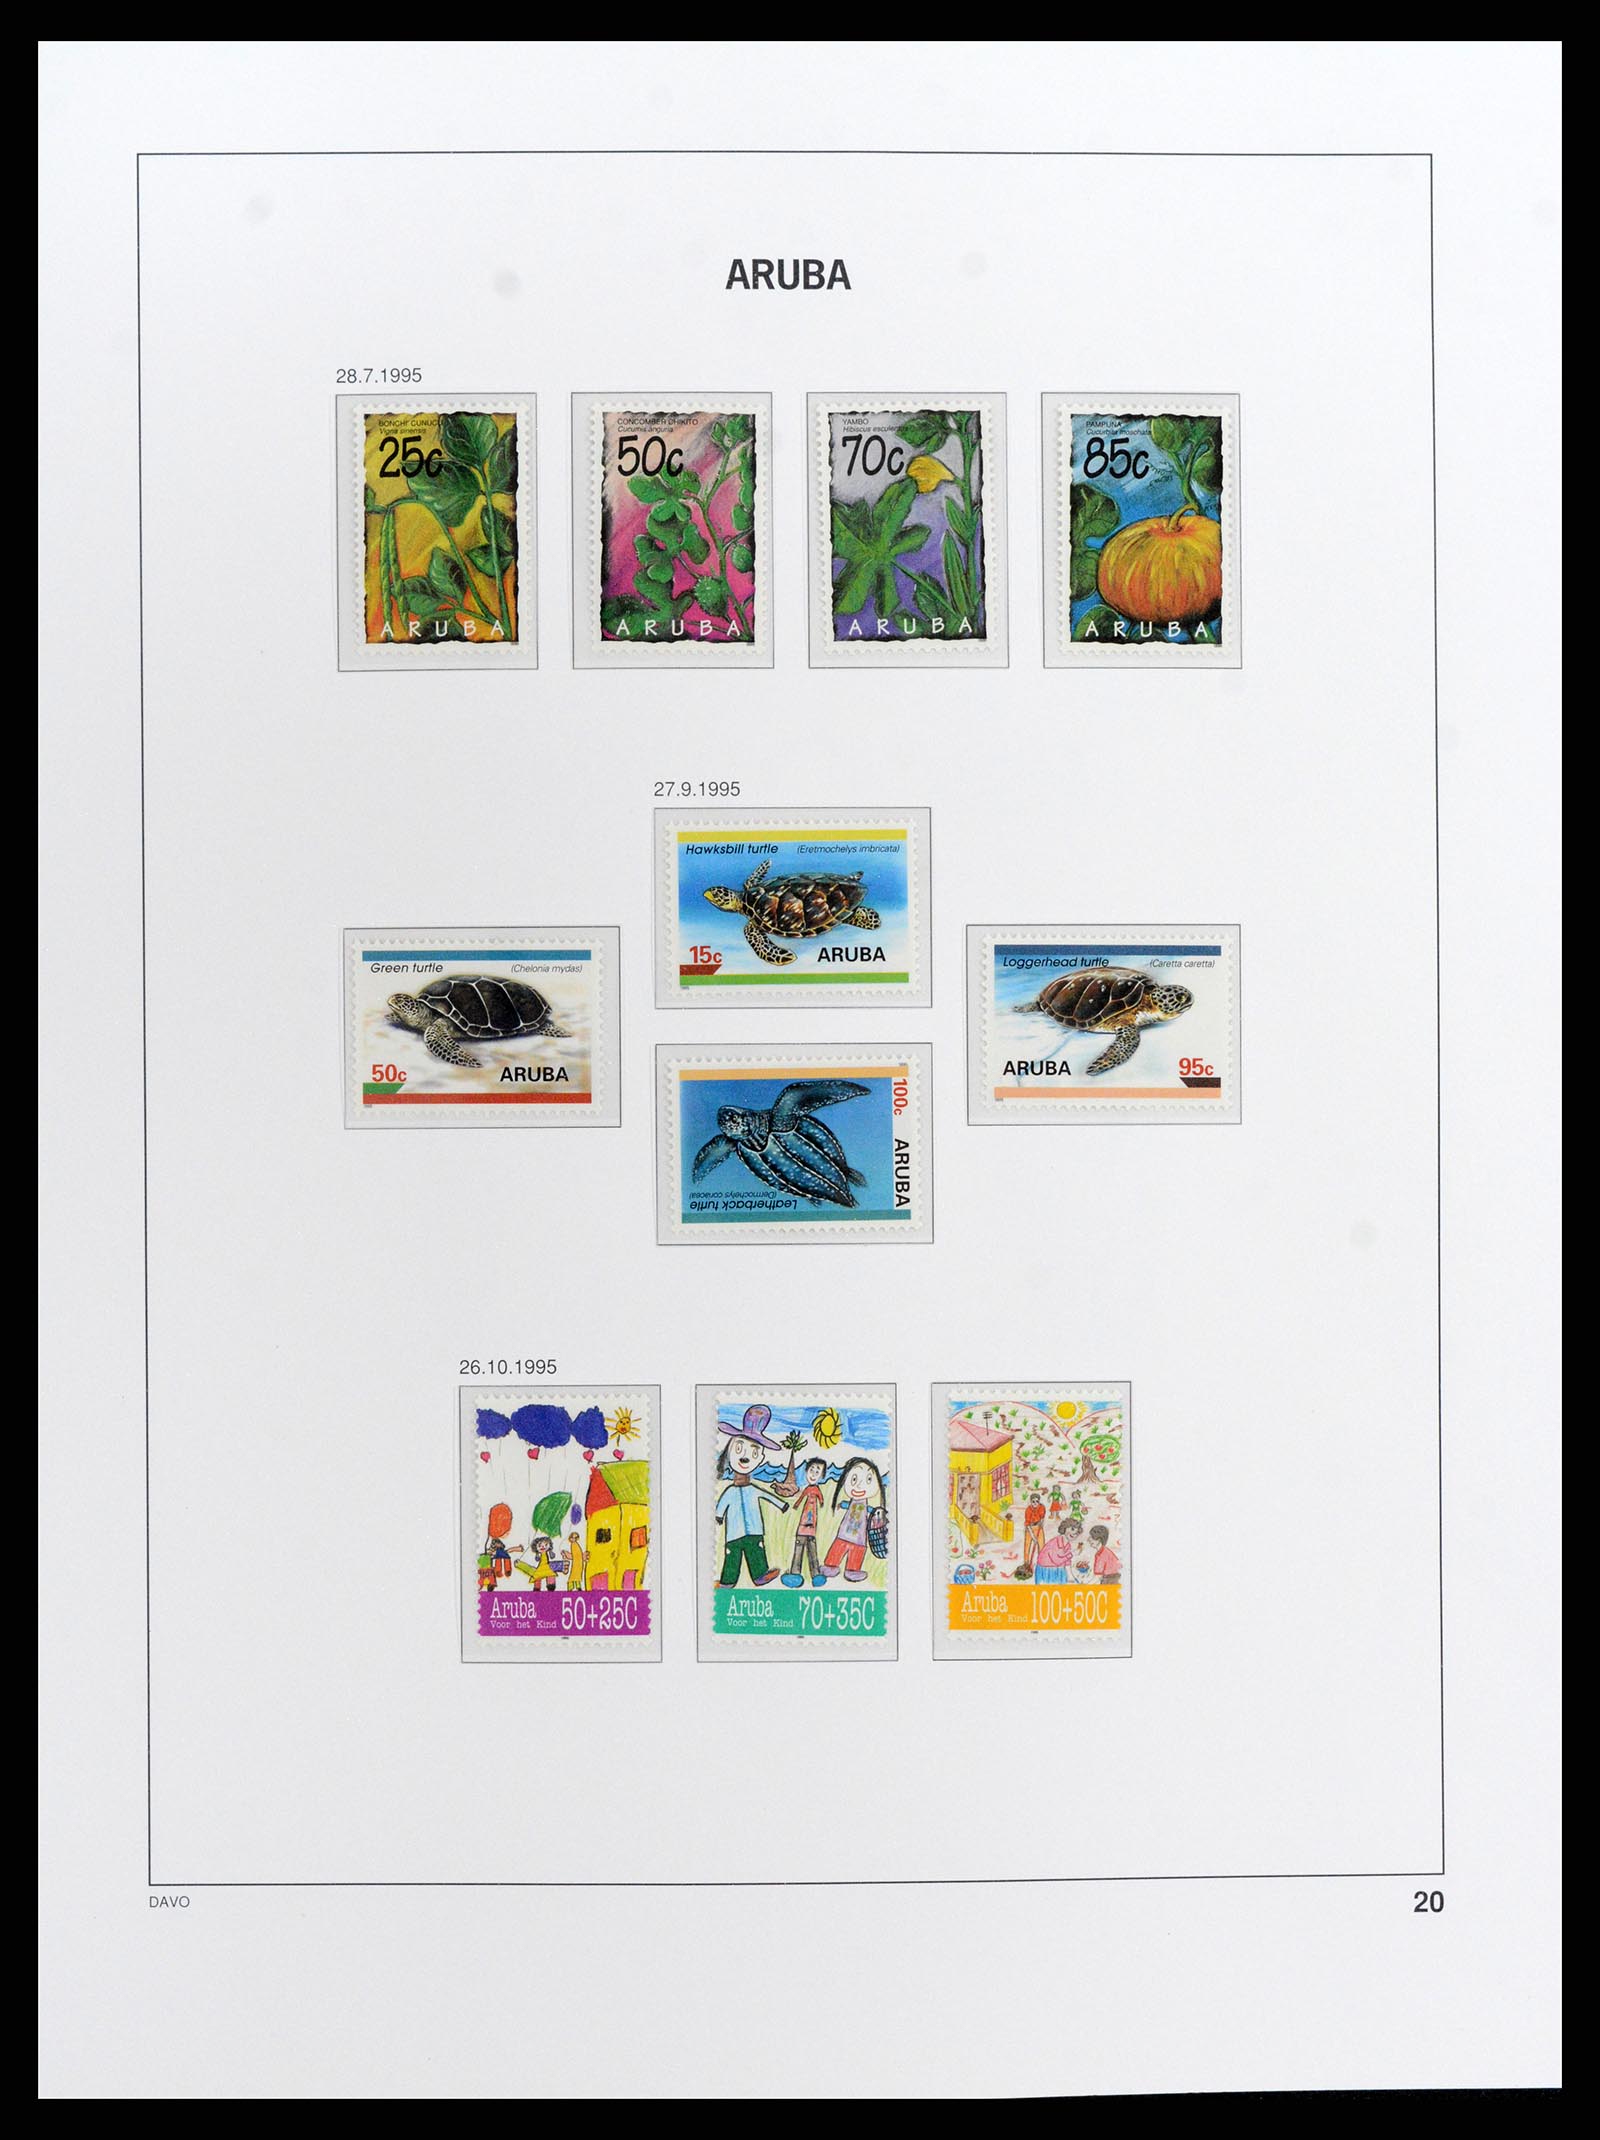 37841 020 - Stamp Collection 37841 Aruba 1986-2011.